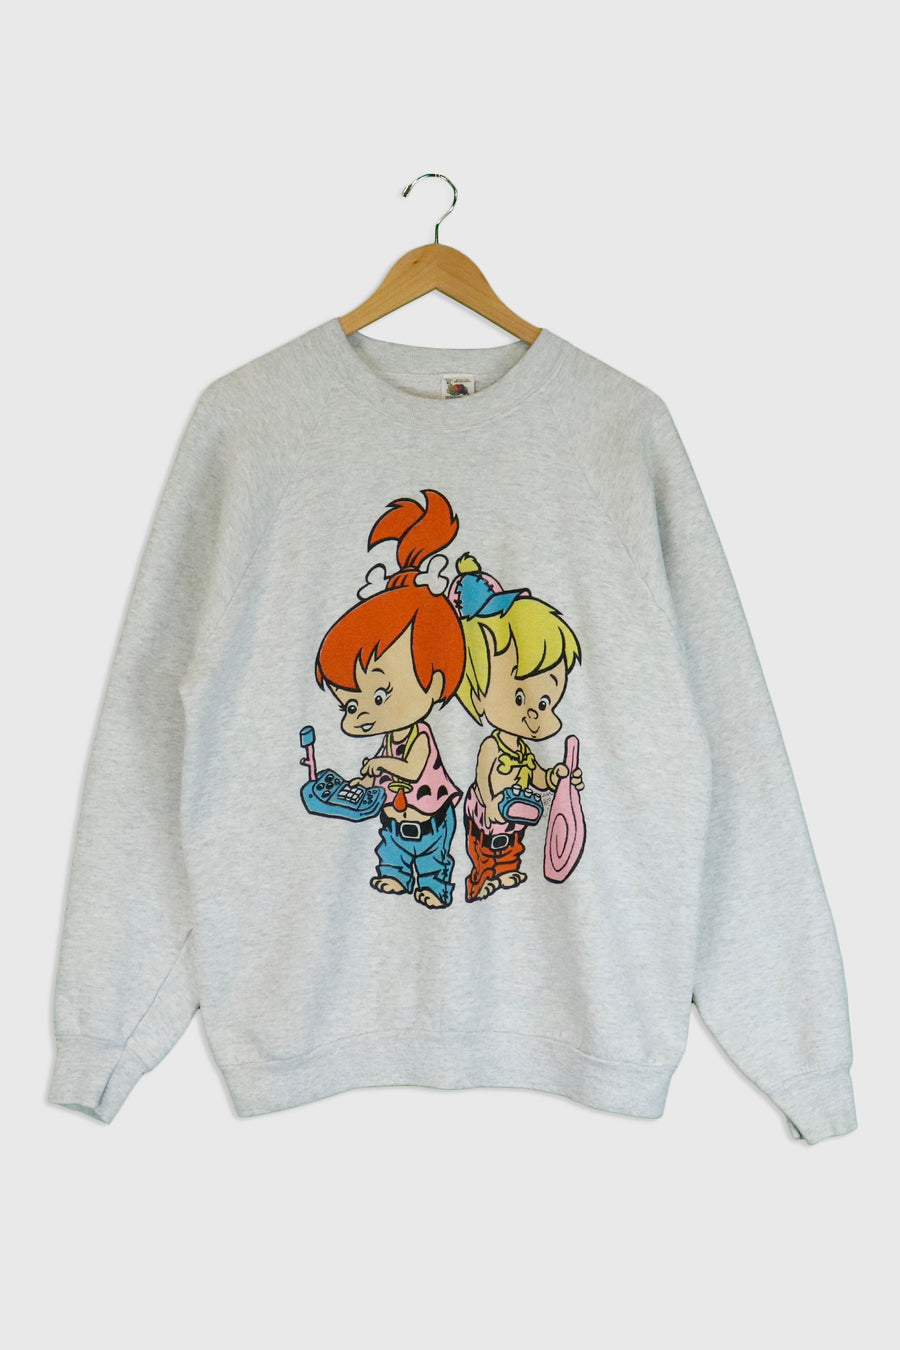 Vintage Flintstones Pebbles And Bambam Sweatshirt Sz XL